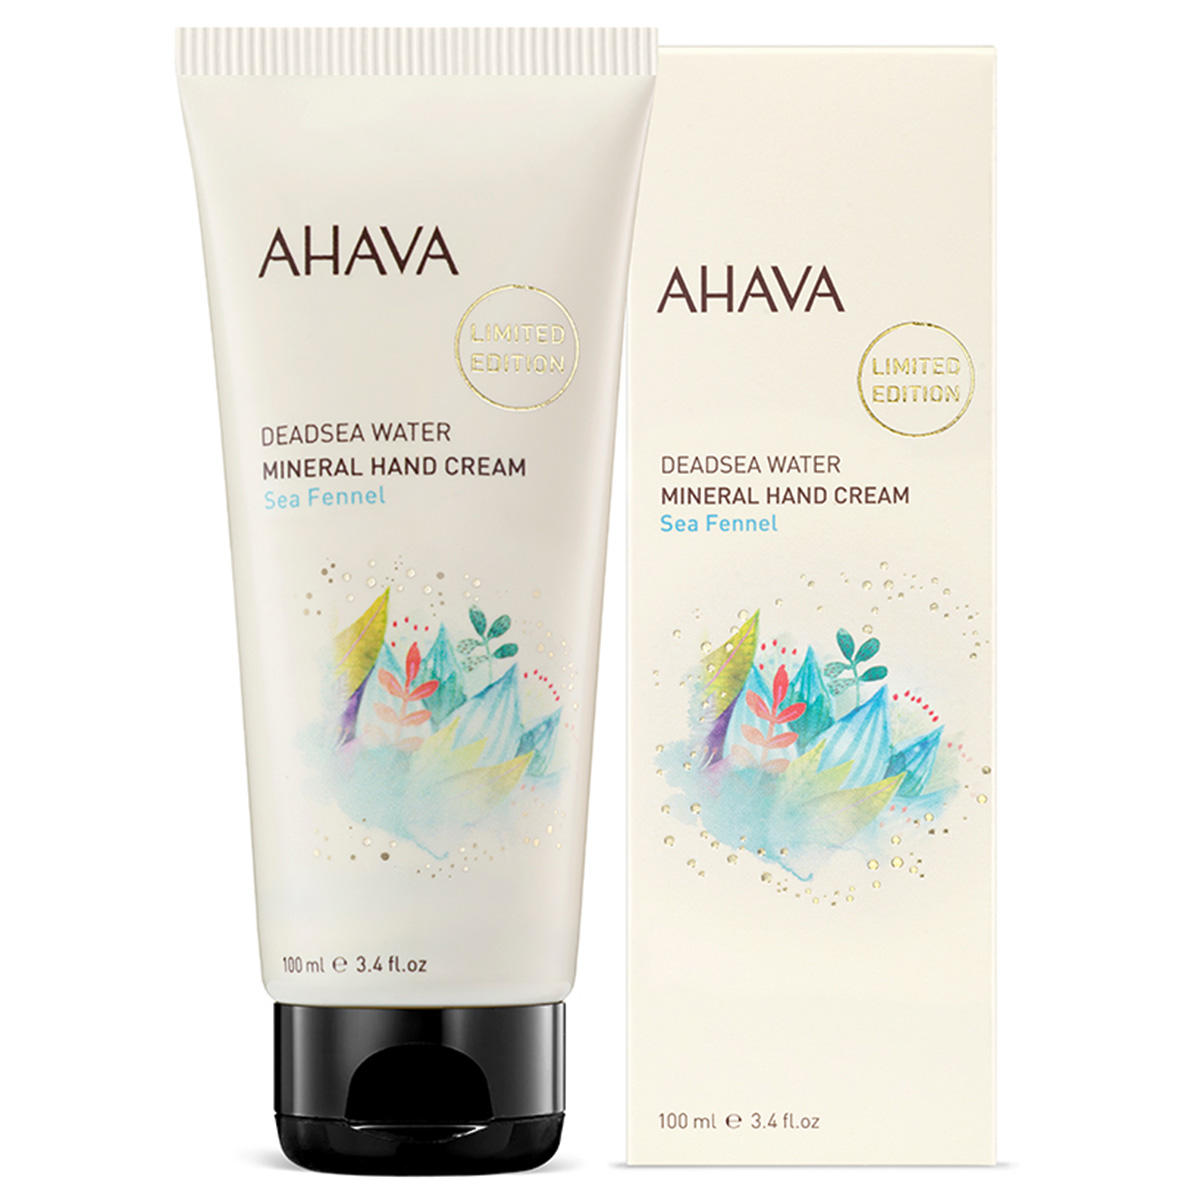 AHAVA Deadsea Water Mineral Hand Cream Sea Fennel 100 ml - 2